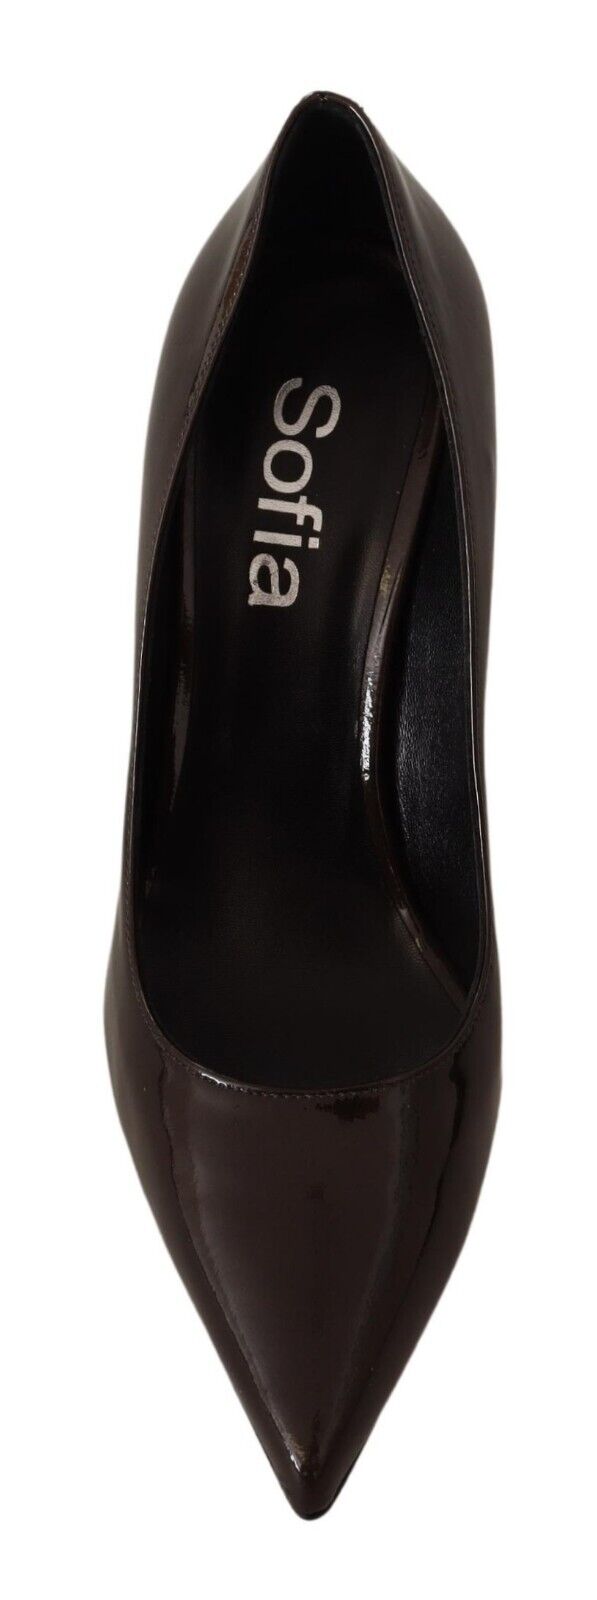 Sofia Brown Patent Leather Stiletto Heels Pumps Shoes - Fizigo